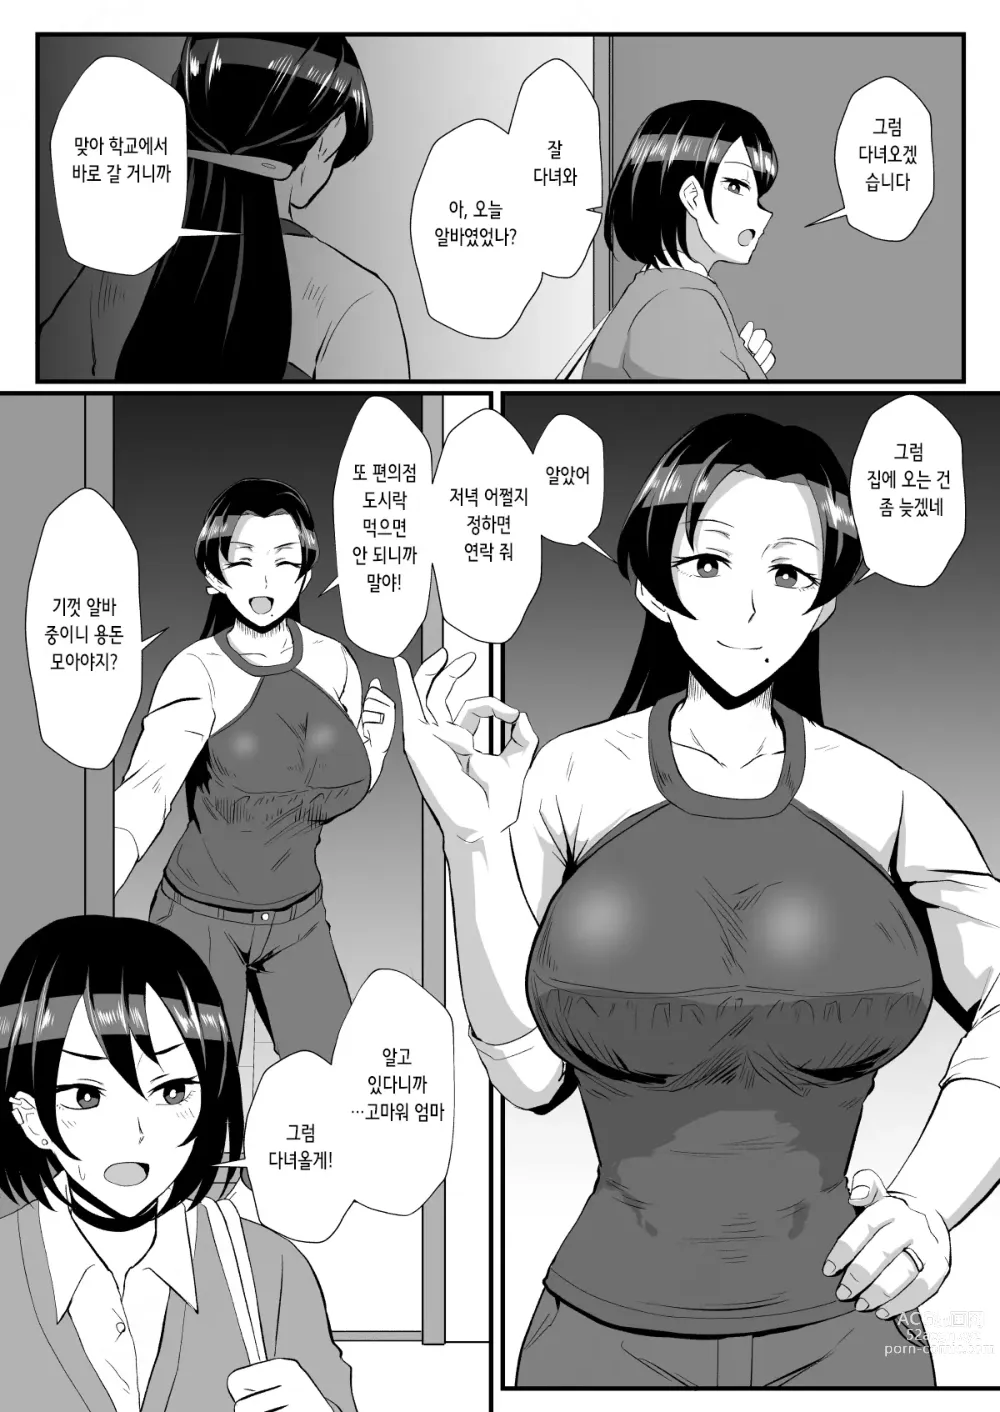 Page 3 of doujinshi 「부재중인 남편에게 맡겨진 딸을 지키고 싶은」 엄마와 재택 가사 대행 아르바이트